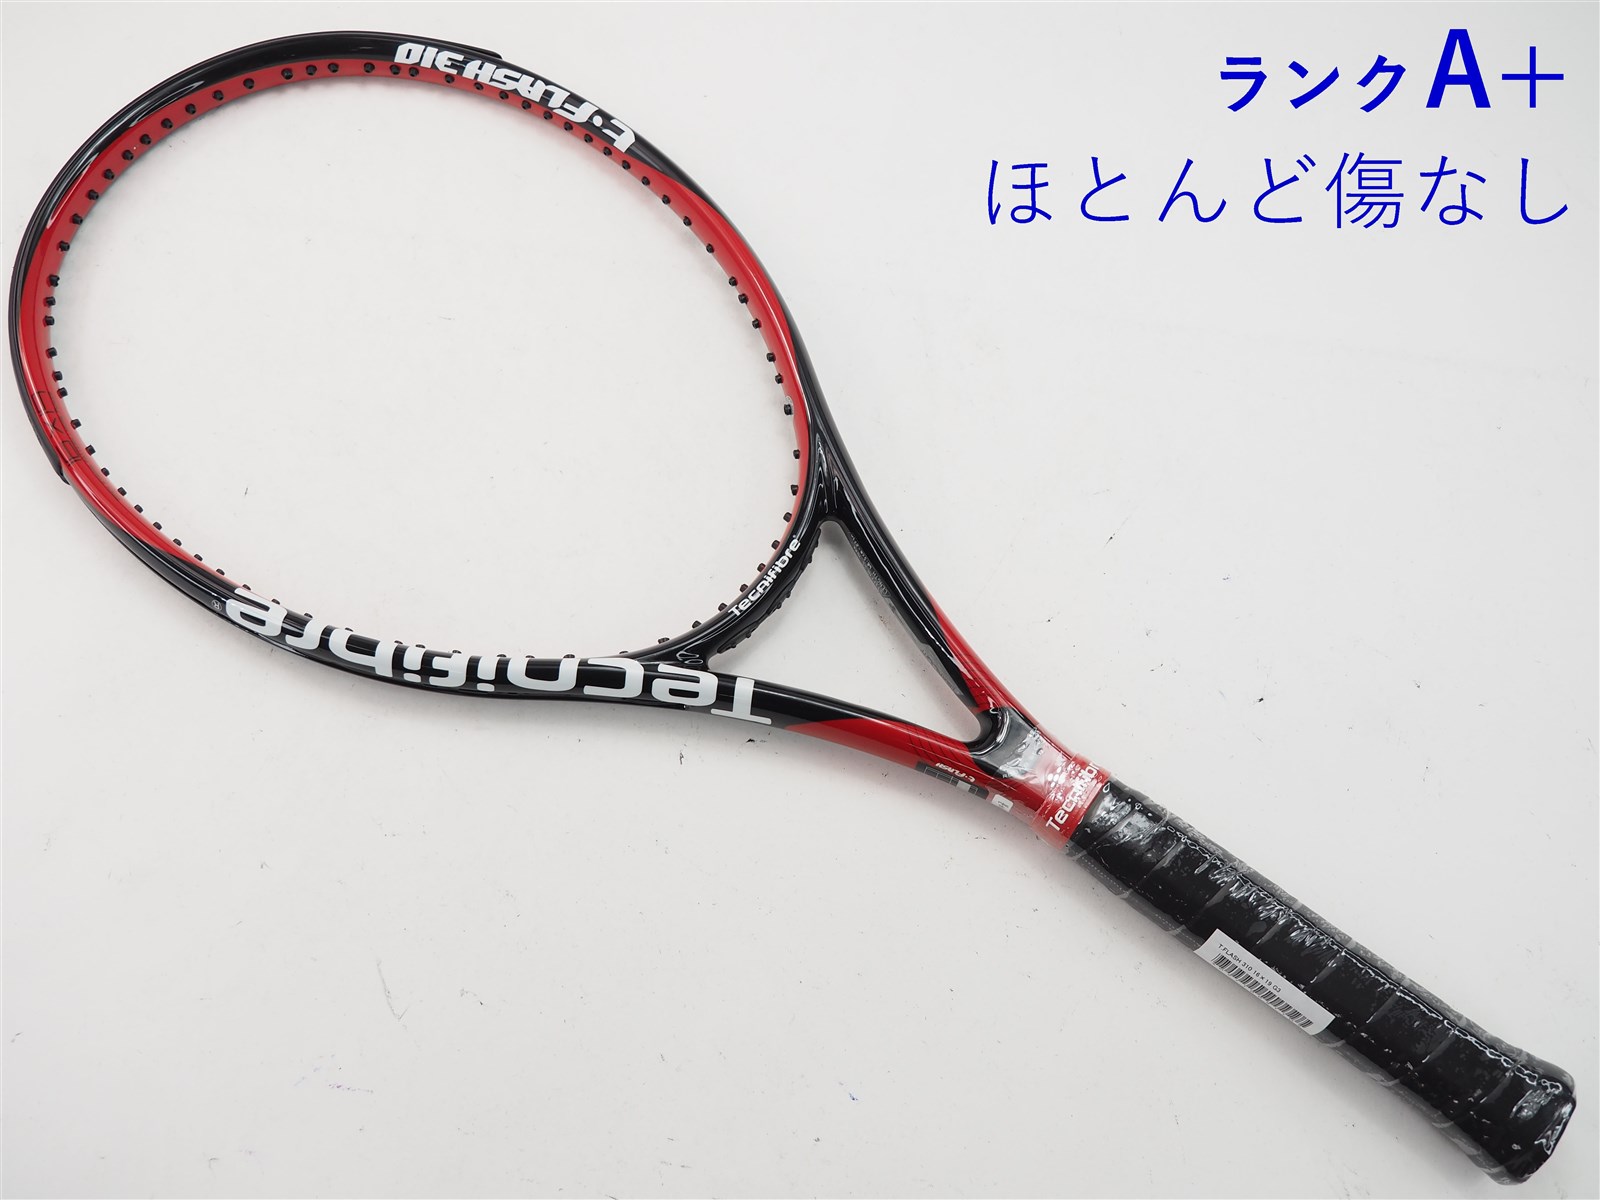 tecnifibre t flash 300 シリーズ3 ダイナコアATP G2 テクニファイバー Tフラッシュ テニスラケット サイズ グリップ2 4 1/4 未使用美品